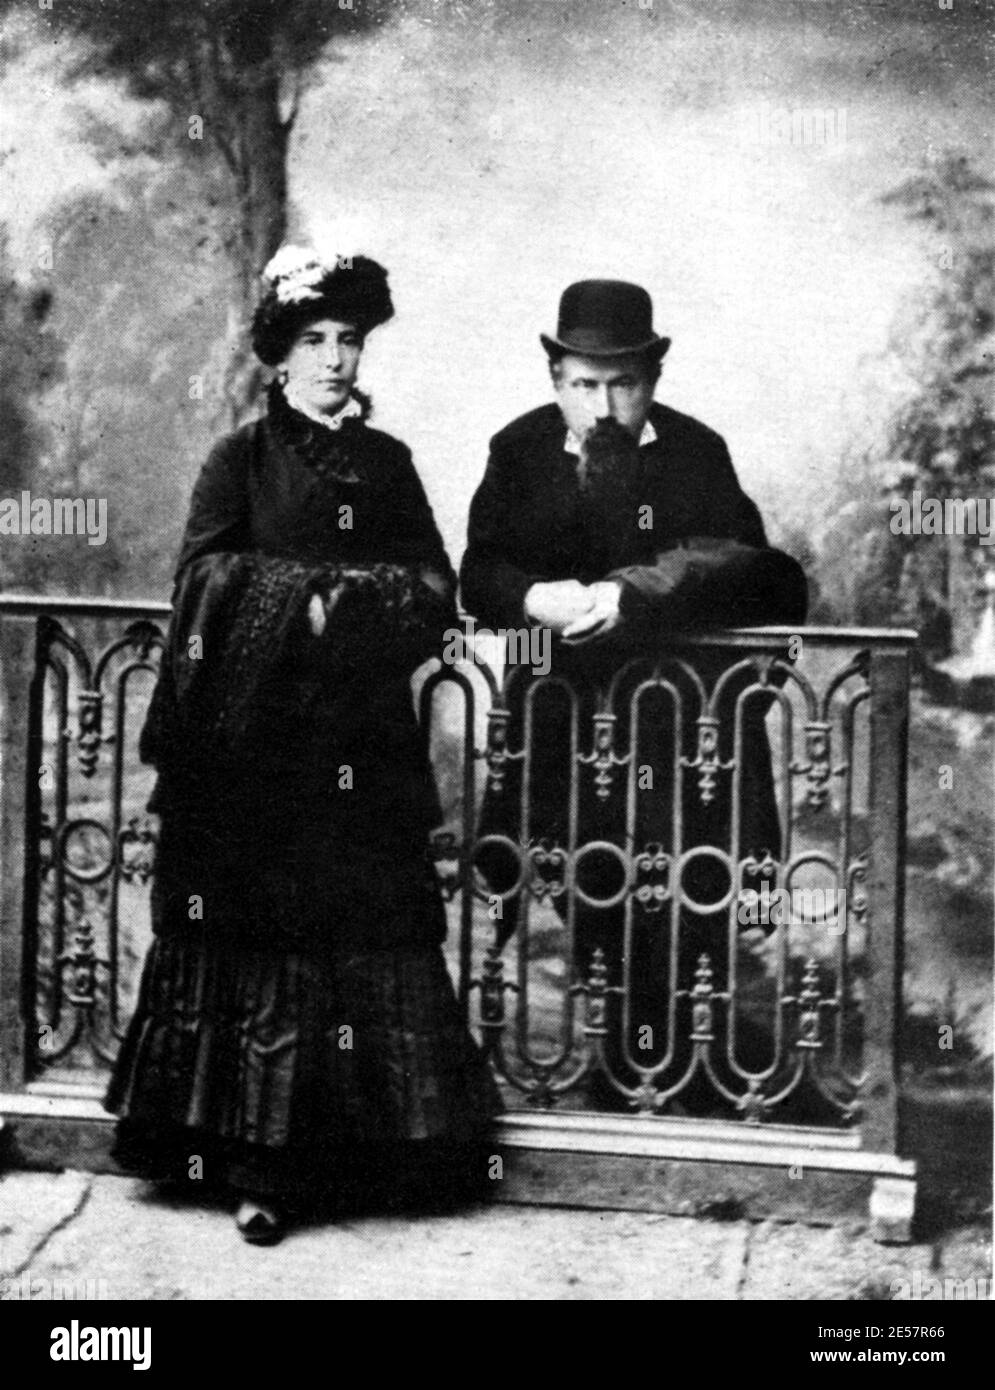 Der Musikkomponist AMILCARE PONCHIELLI ( 1834 - 1886 ) mit seiner Frau, der Opernsängerin Gräfin TERESA BRAMBILLA - Portrait - ritratto - marito e moglie - Derby hat - cappello bombetta - contessa - nobili italiani - nobiltà italiana - Adel - MUSICA CLASSICA - KLASSISCH ---- Archivio GBB Stockfoto